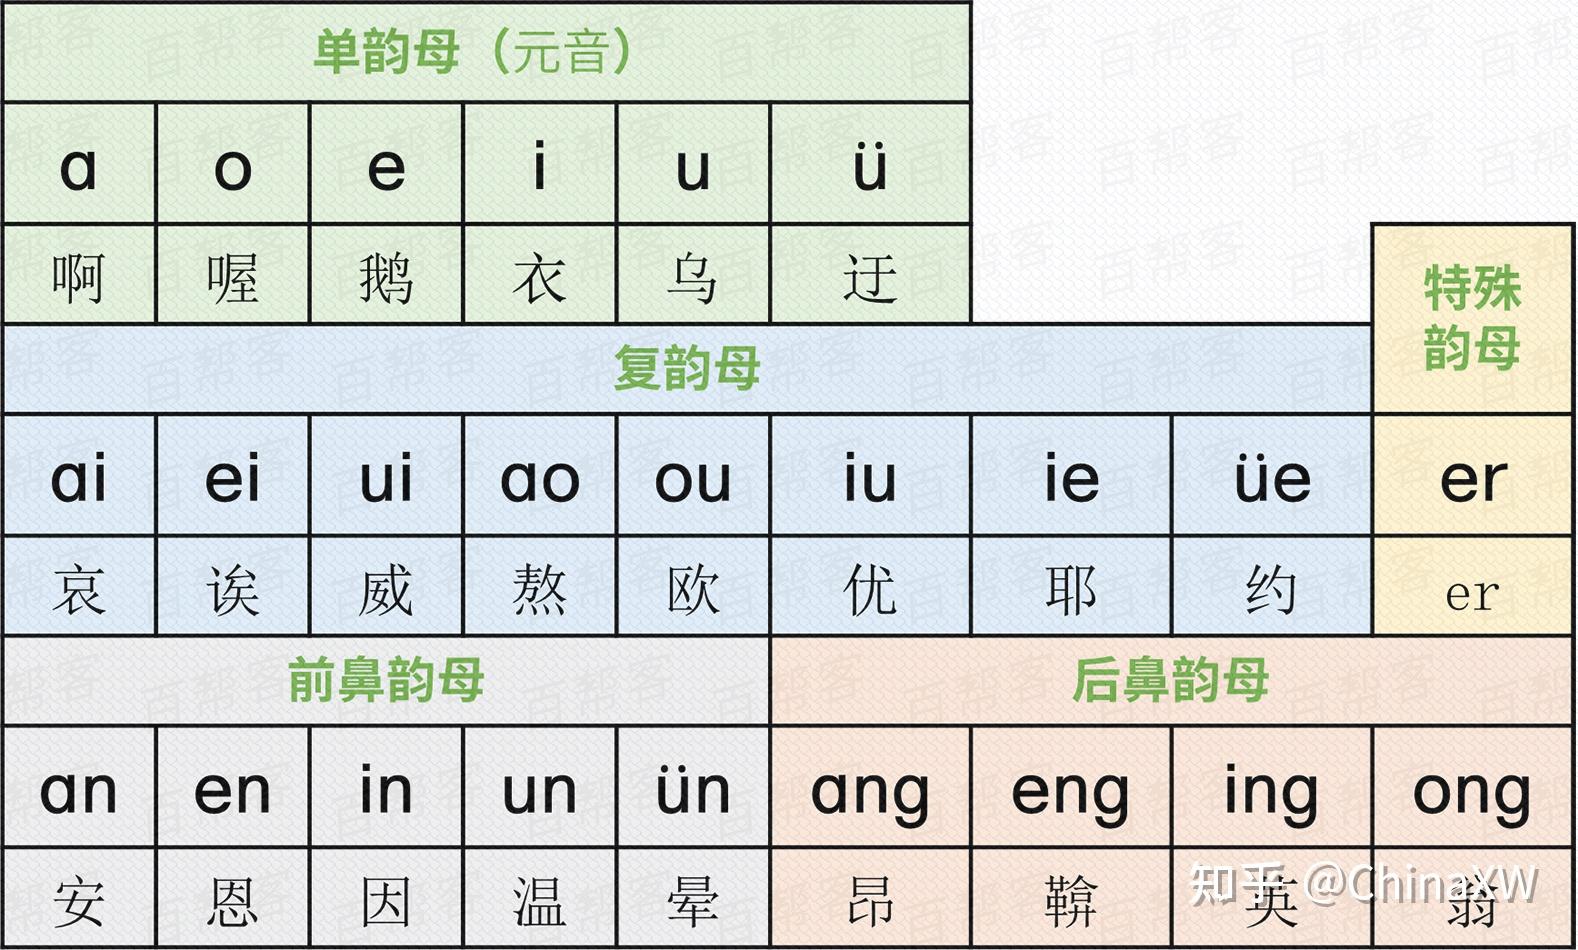 汉语拼音方案中的26个字母,为了运用方便,符合国际习惯,拼音字母排列